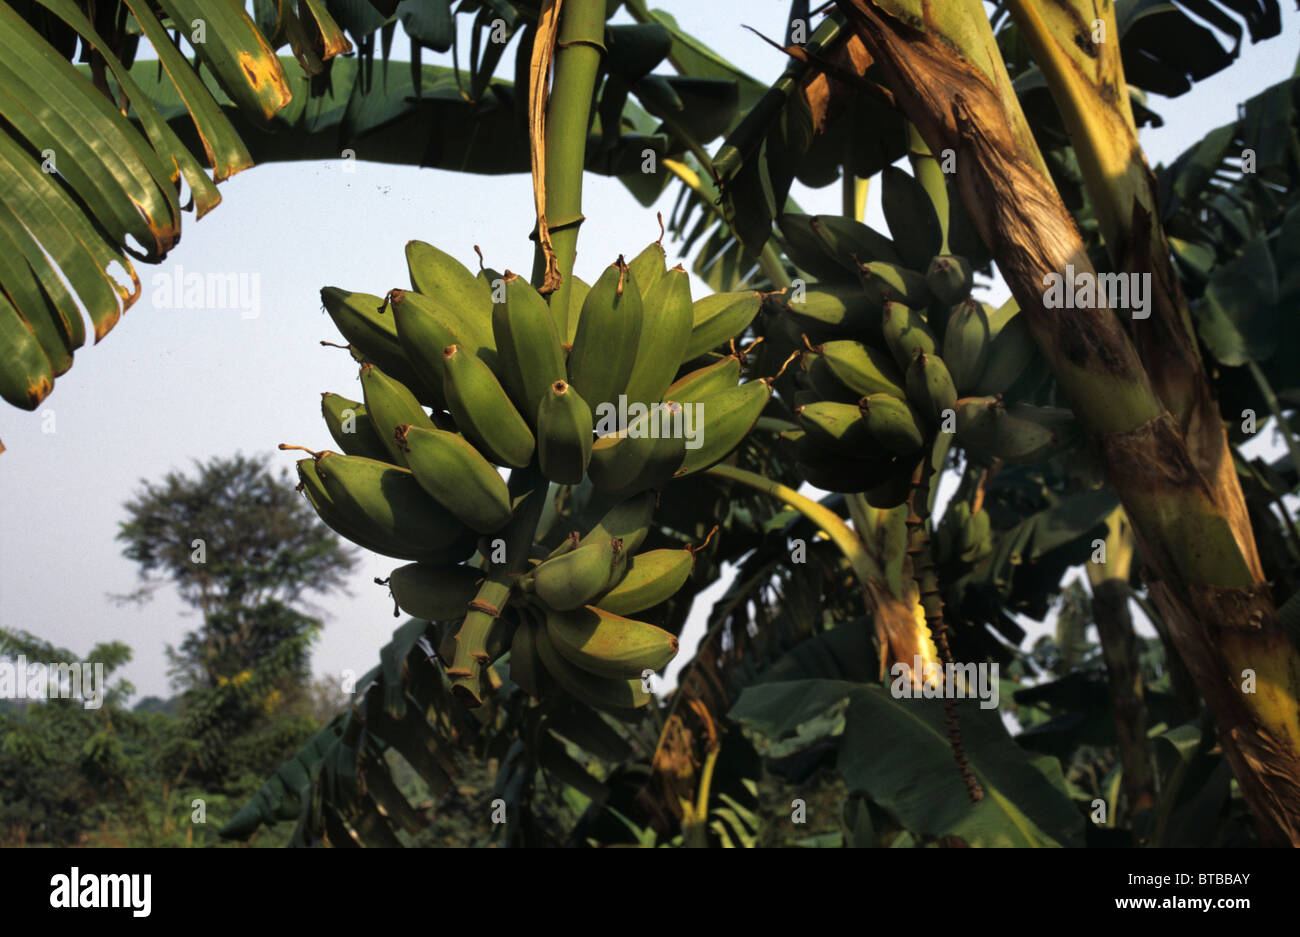 bananas in Uganda Stock Photo